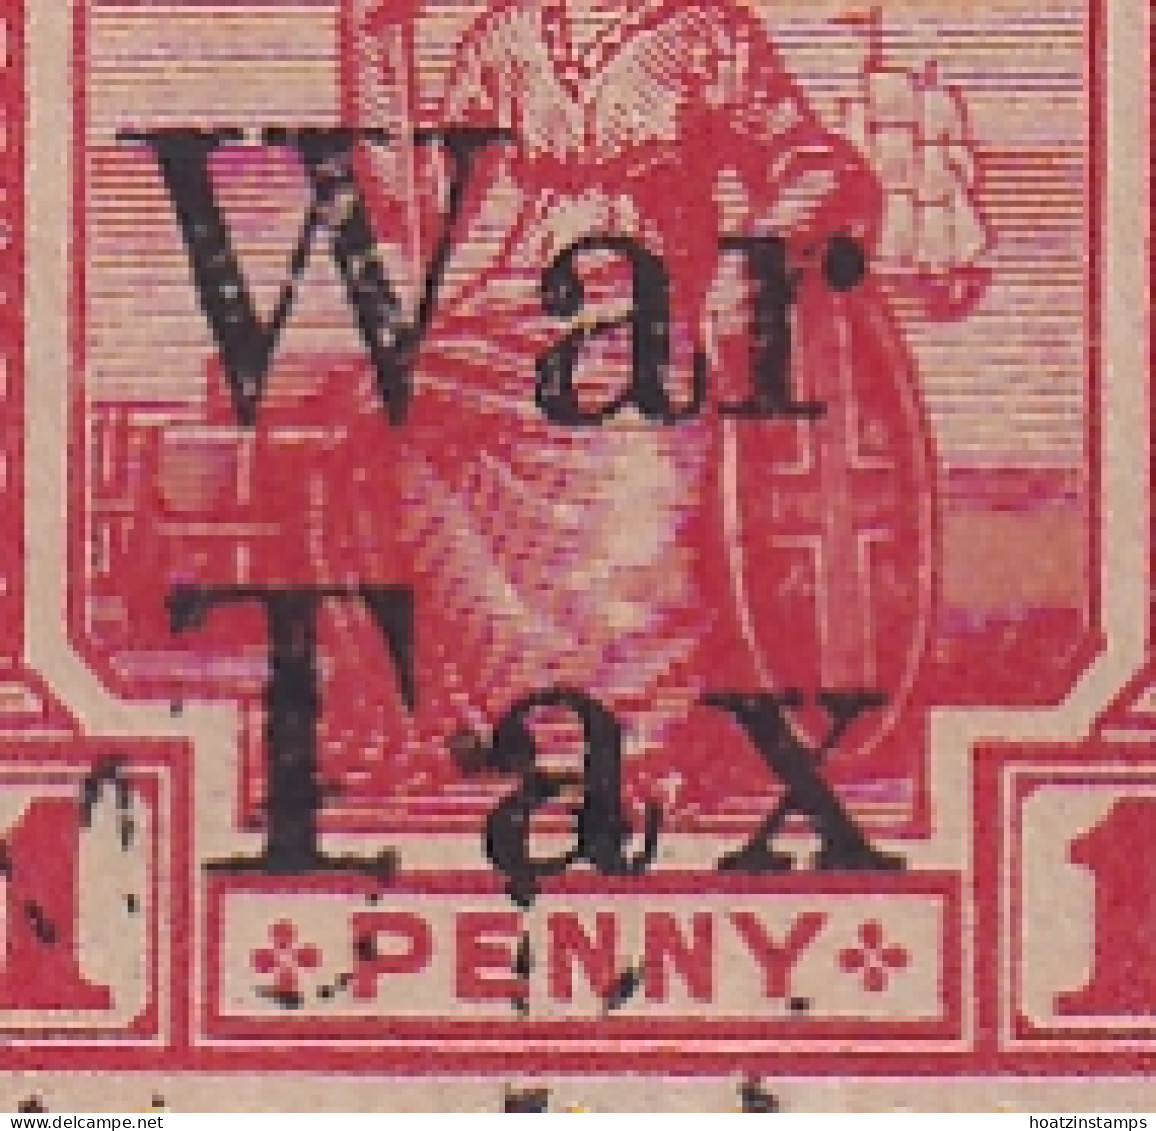 Trinidad & Tobago: 1918   Britannia 'War Tax' OVPT    SG189    1d   ['Tax' Spaced]     Used Block Of 4 - Trinidad Y Tobago